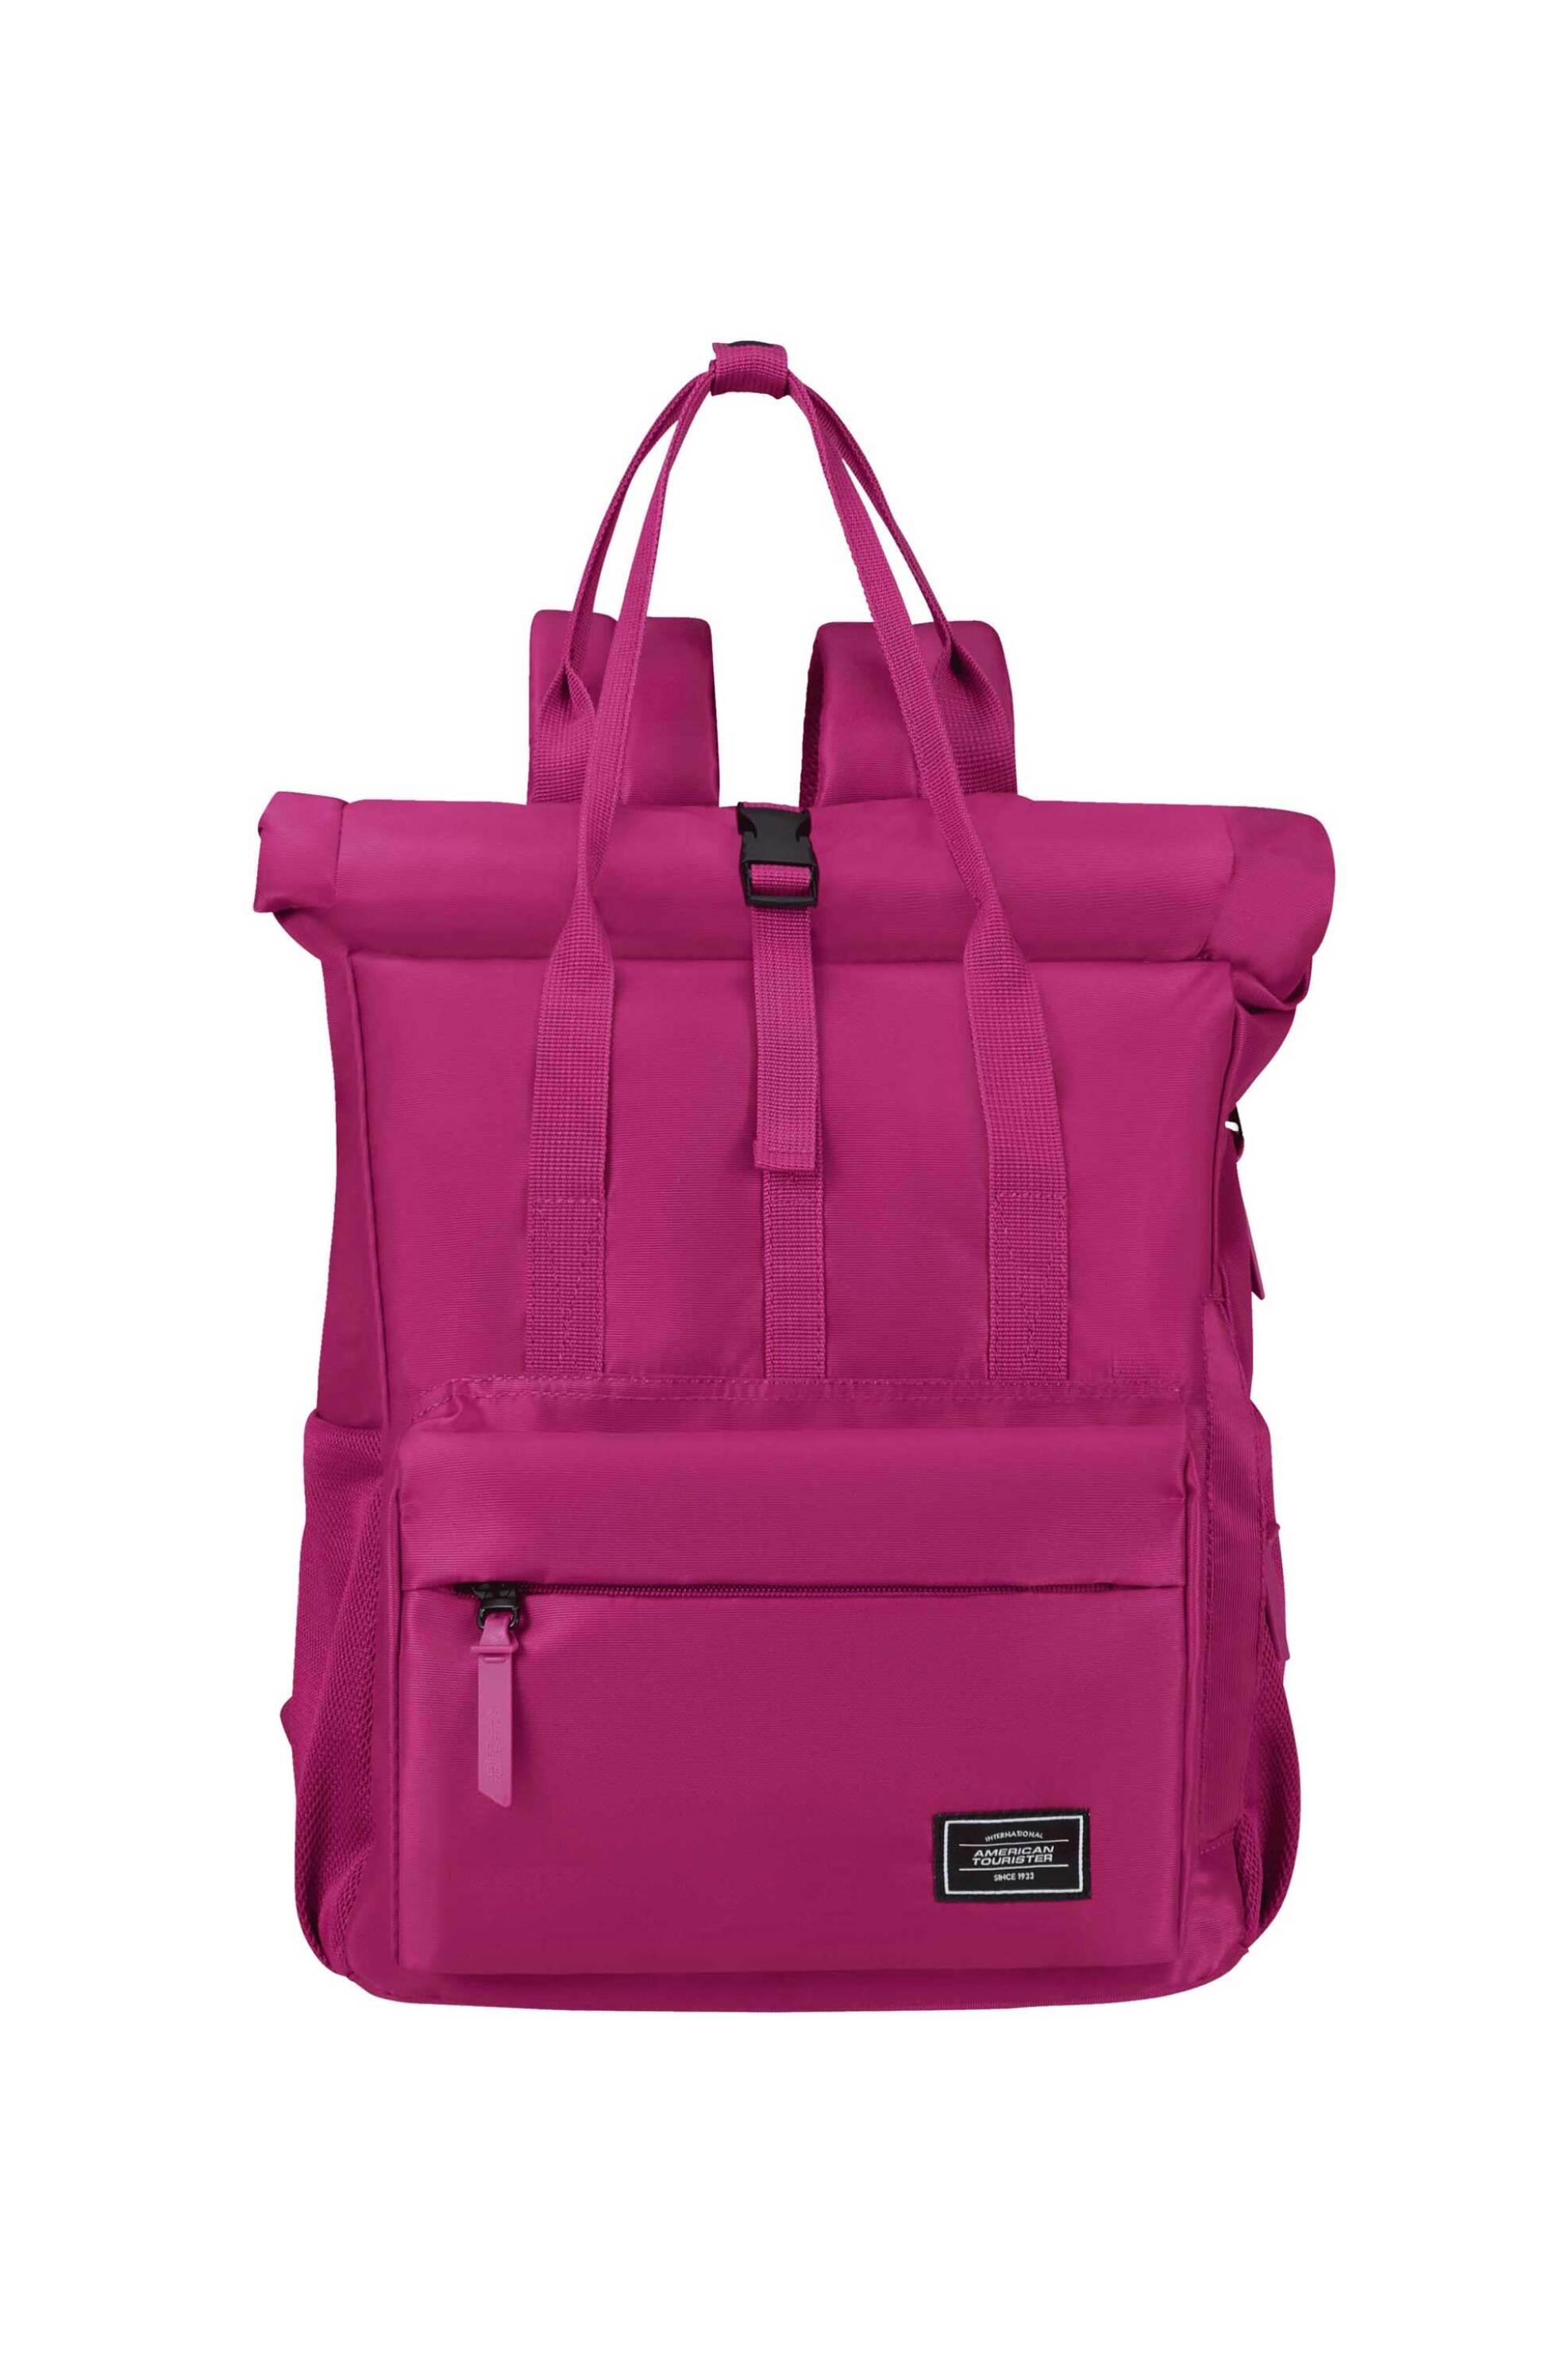 Ανδρική Μόδα > Ανδρικές Τσάντες > Ανδρικά Σακίδια & Backpacks American Tourister unisex backpack μονόχρωμο με θήκη laptop 15,6'' "Urban Groove" 42,5 x 30,5 x 21 cm - 147671SM Φούξια